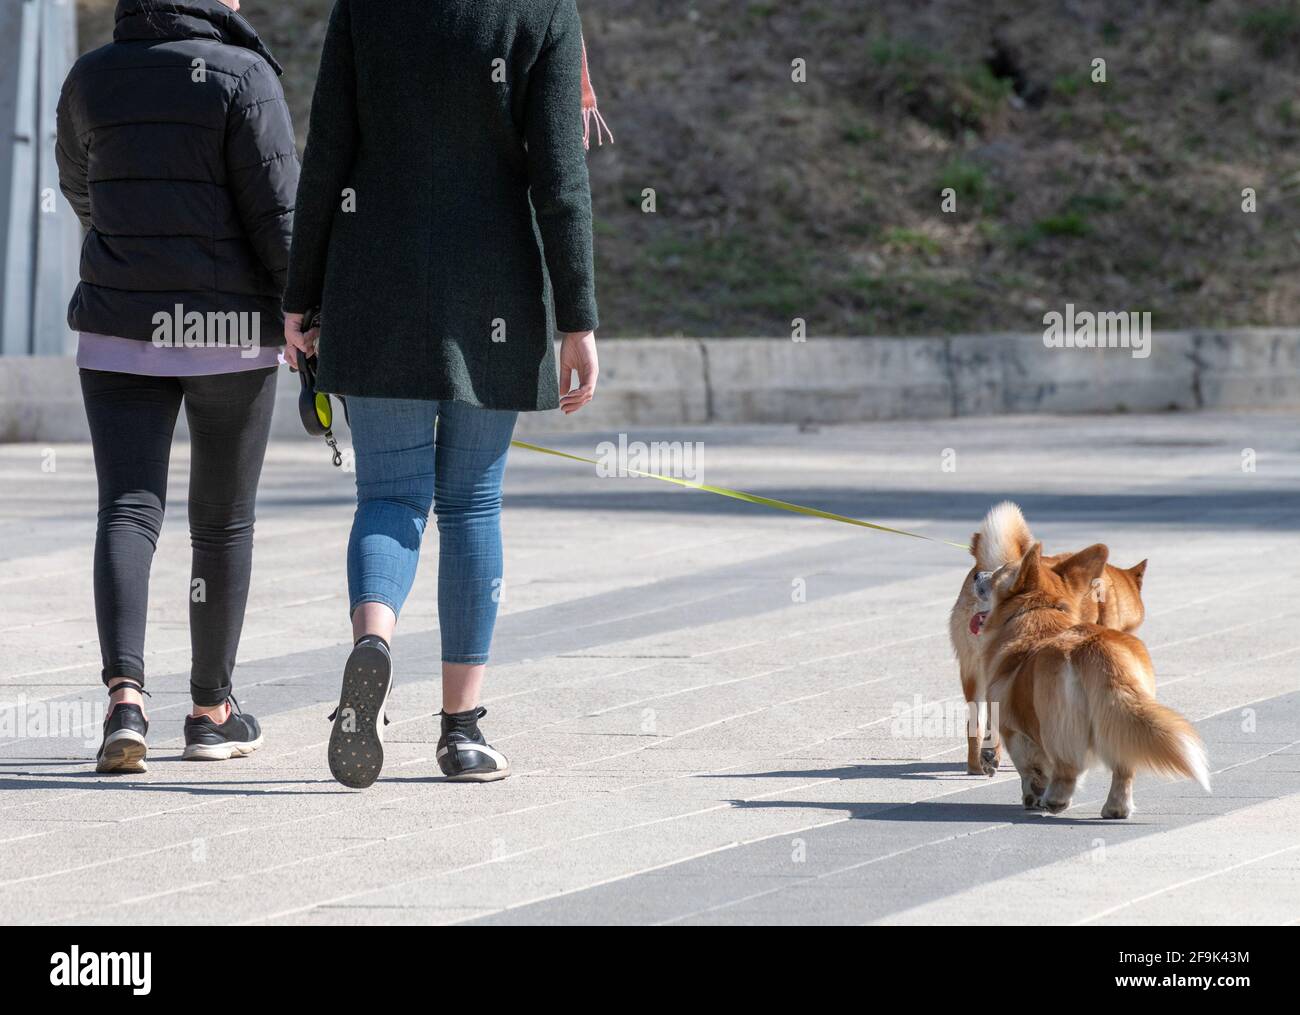 Deux femmes marchant galloise Corgi chien gilet Banque D'Images